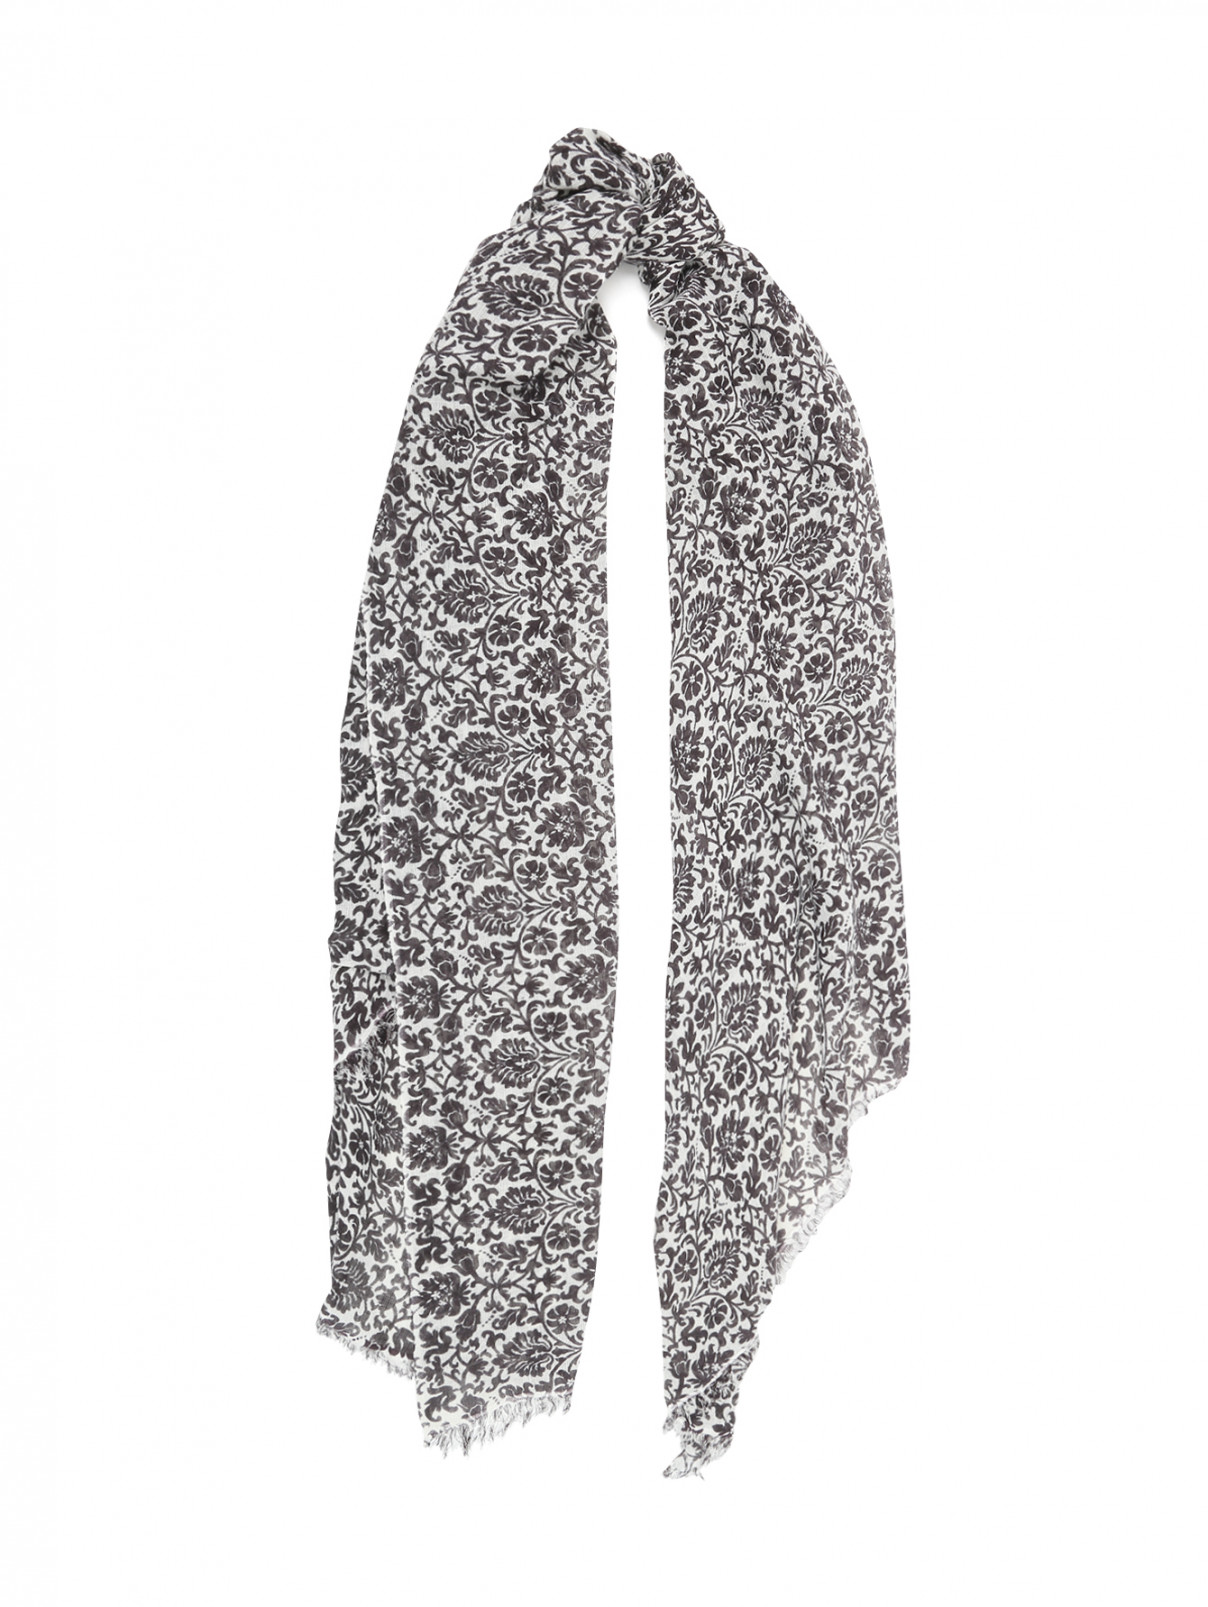 Платок из кашемира, с цветочным узором Alberotanza  –  Общий вид  – Цвет:  Черный